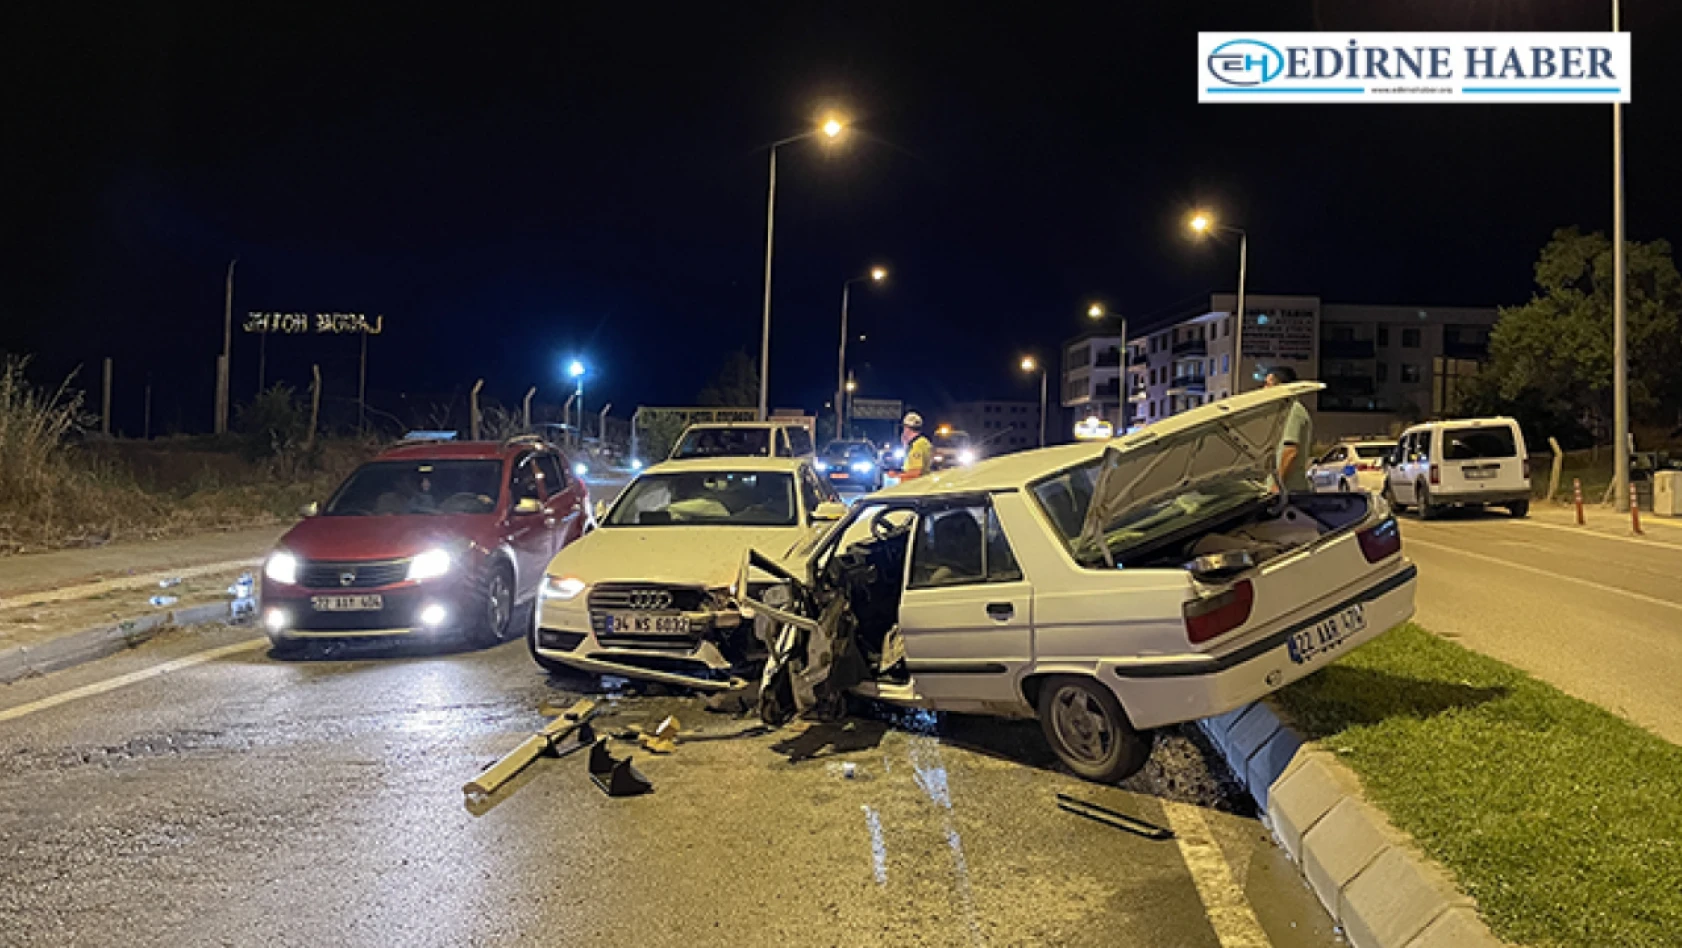 Edirne'de trafik kazasında 2 kişi yaralandı